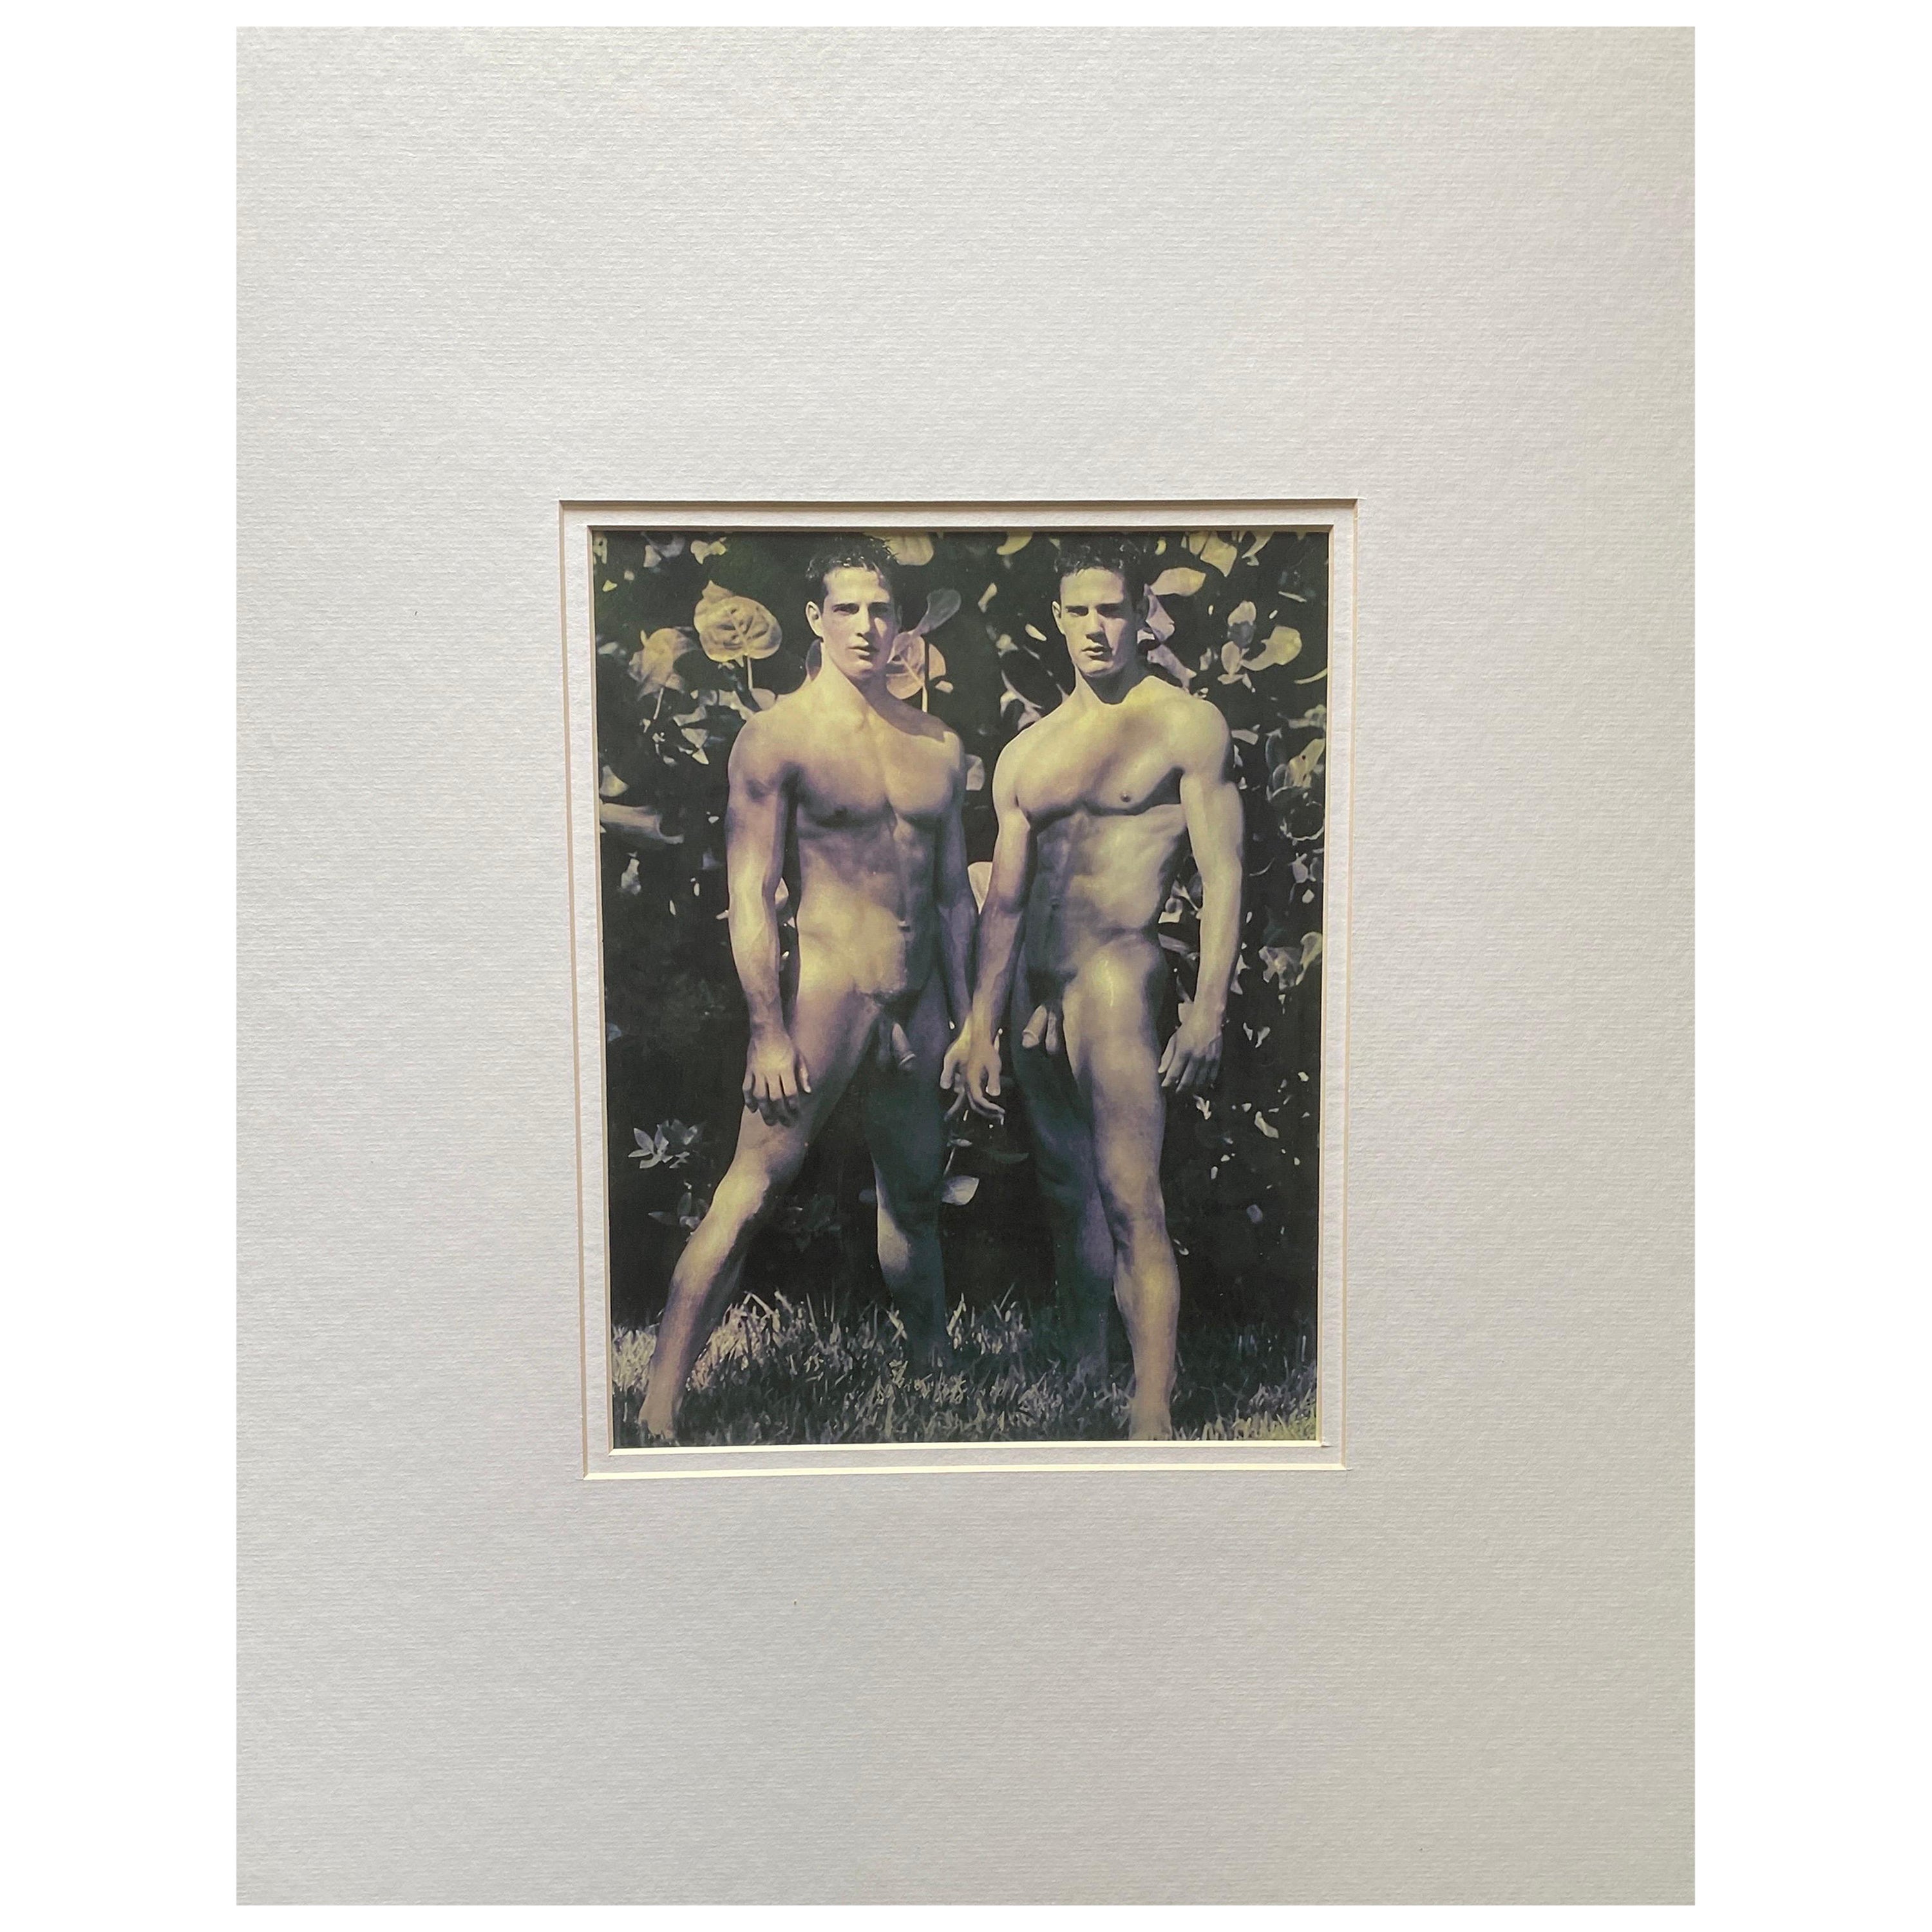 Impresión de Bruce Weber de Los gemelos Carlson, 2000, Desnudo masculino nº 2, entonado a mano y con estera